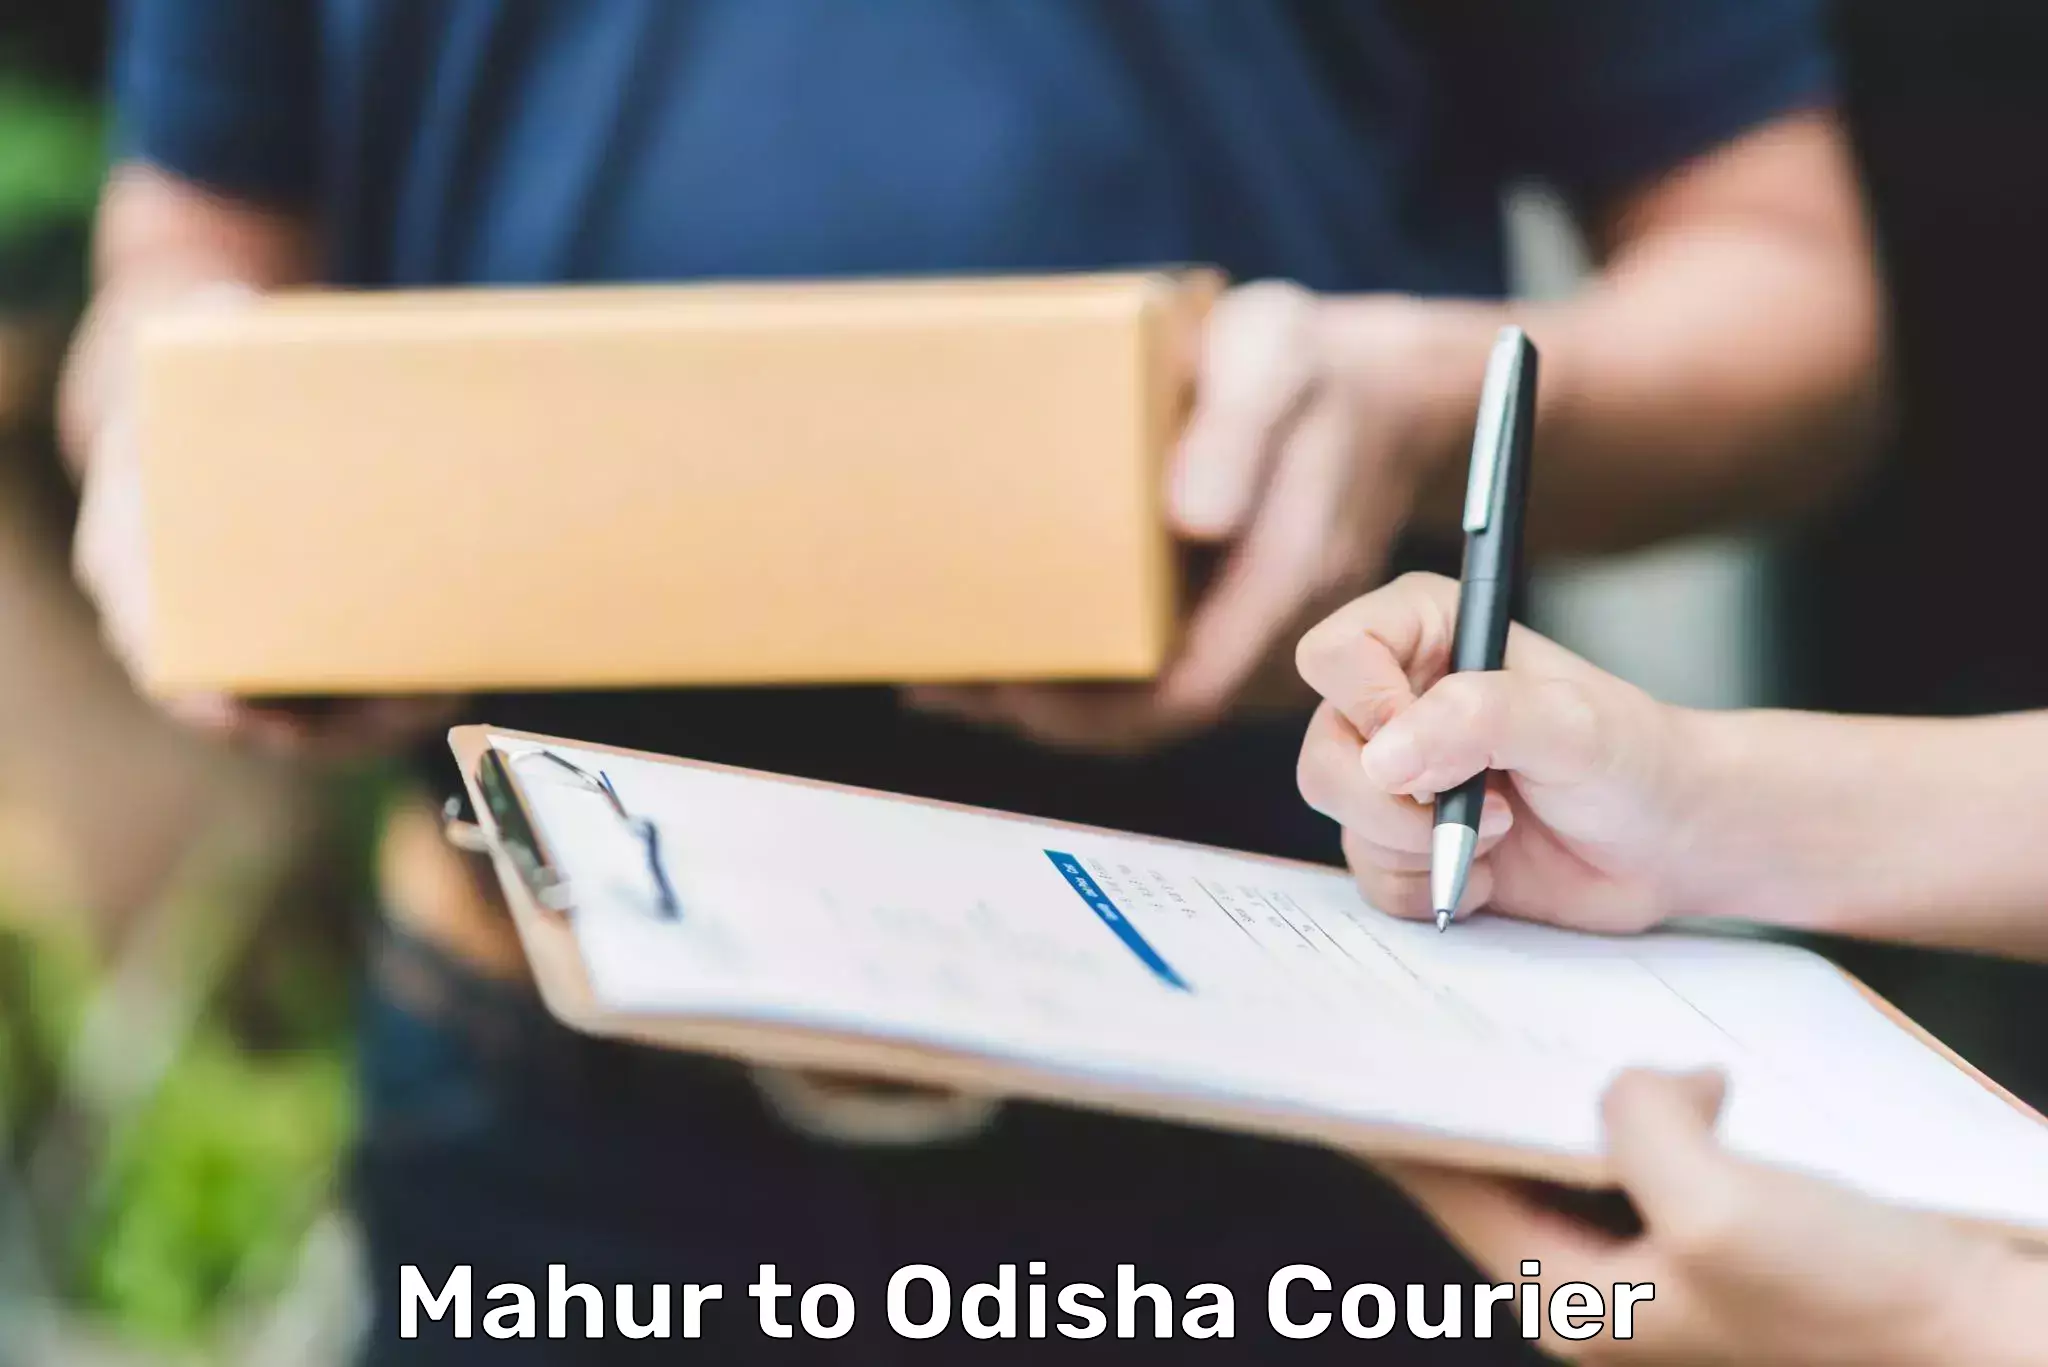 Global courier networks Mahur to Odisha